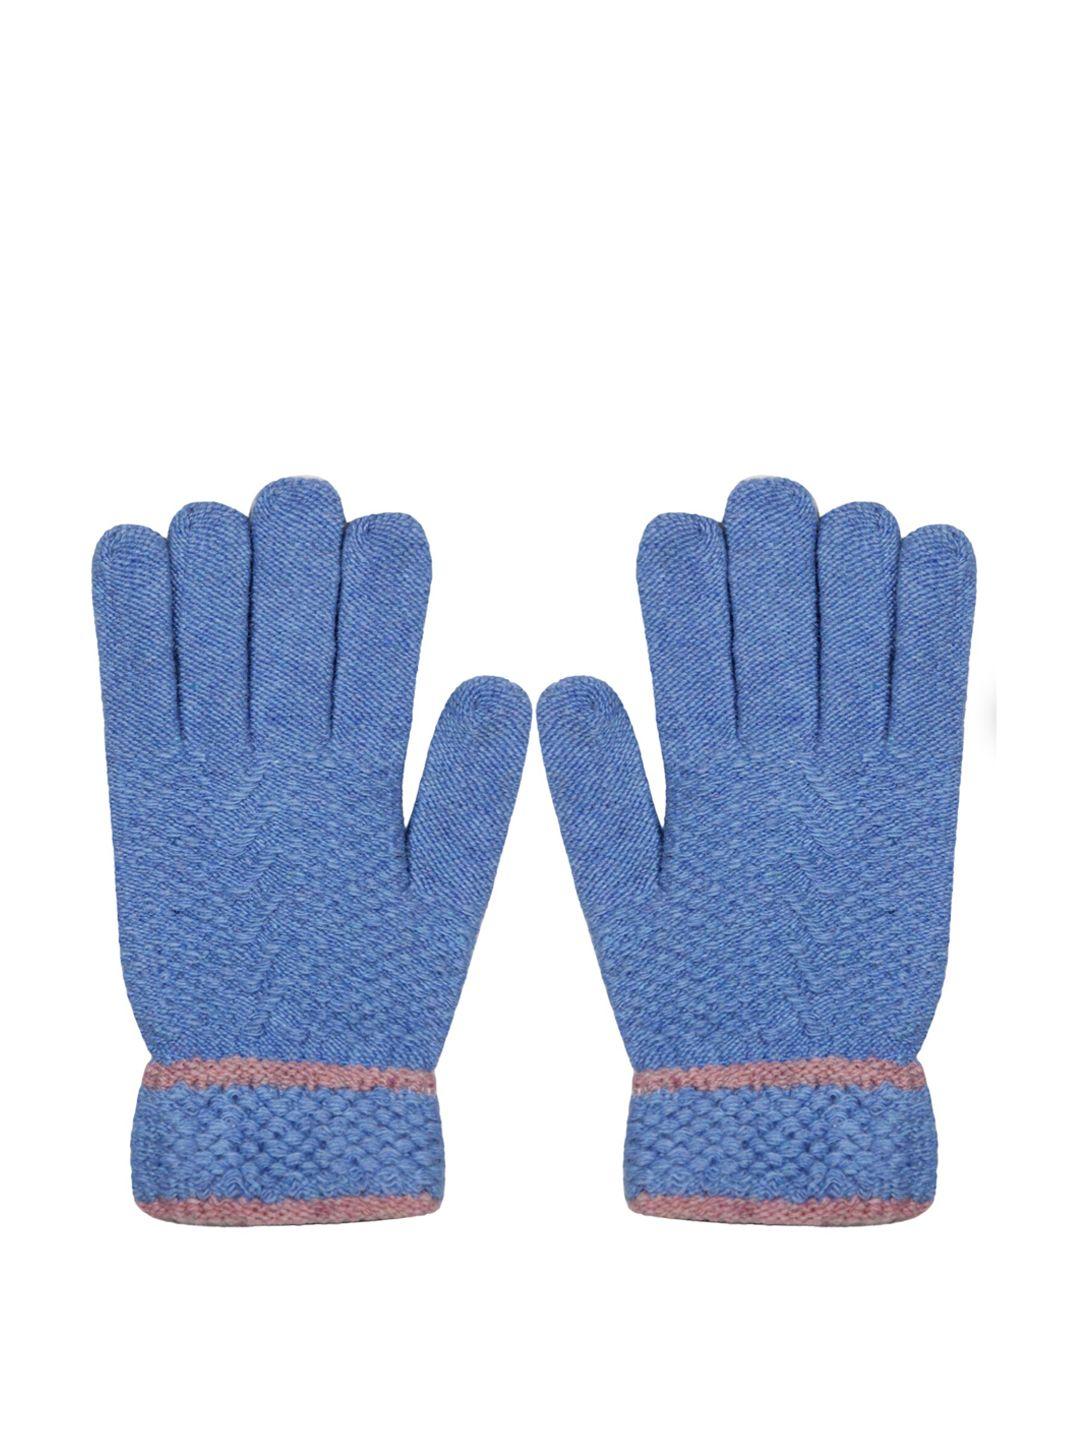 baesd men full finger woolen winter gloves